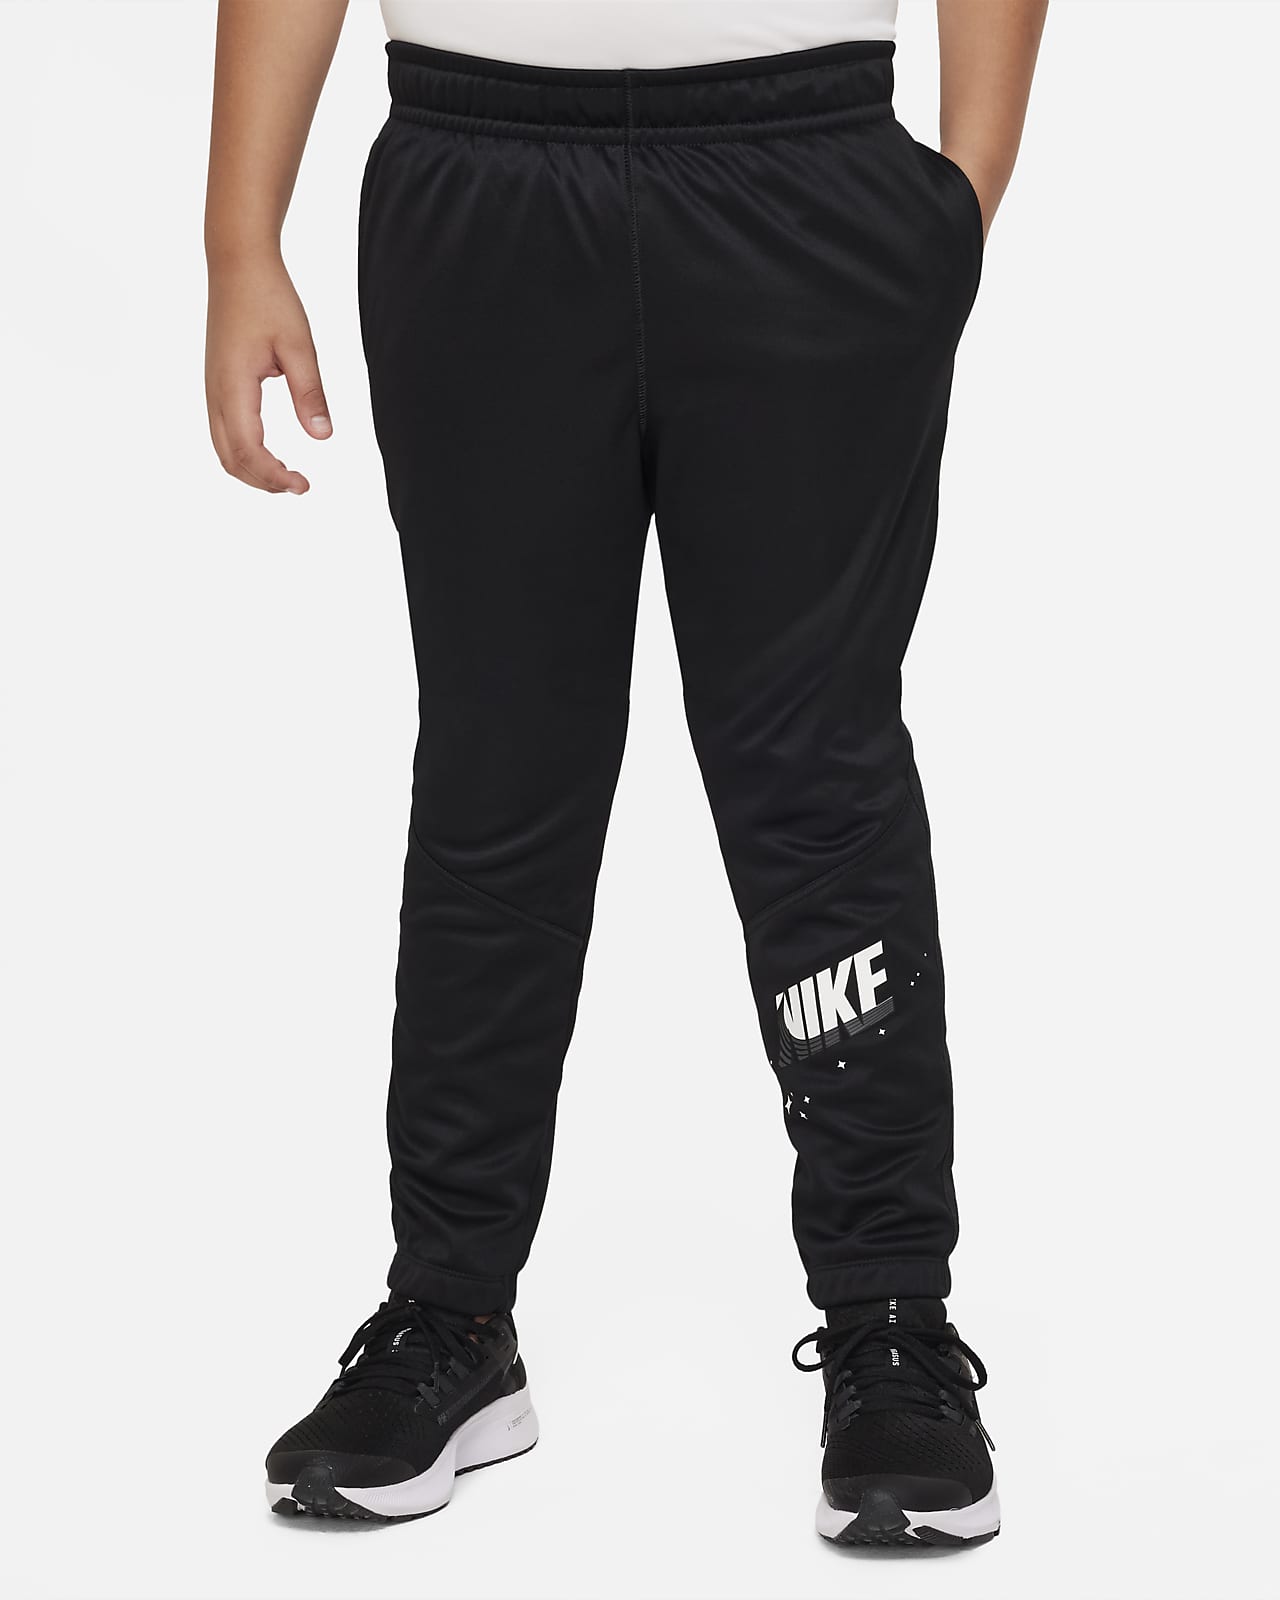 Spodnie treningowe o zwężanym kroju dla dużych dzieci (chłopców) Nike Therma-FIT (szersze rozmiary)